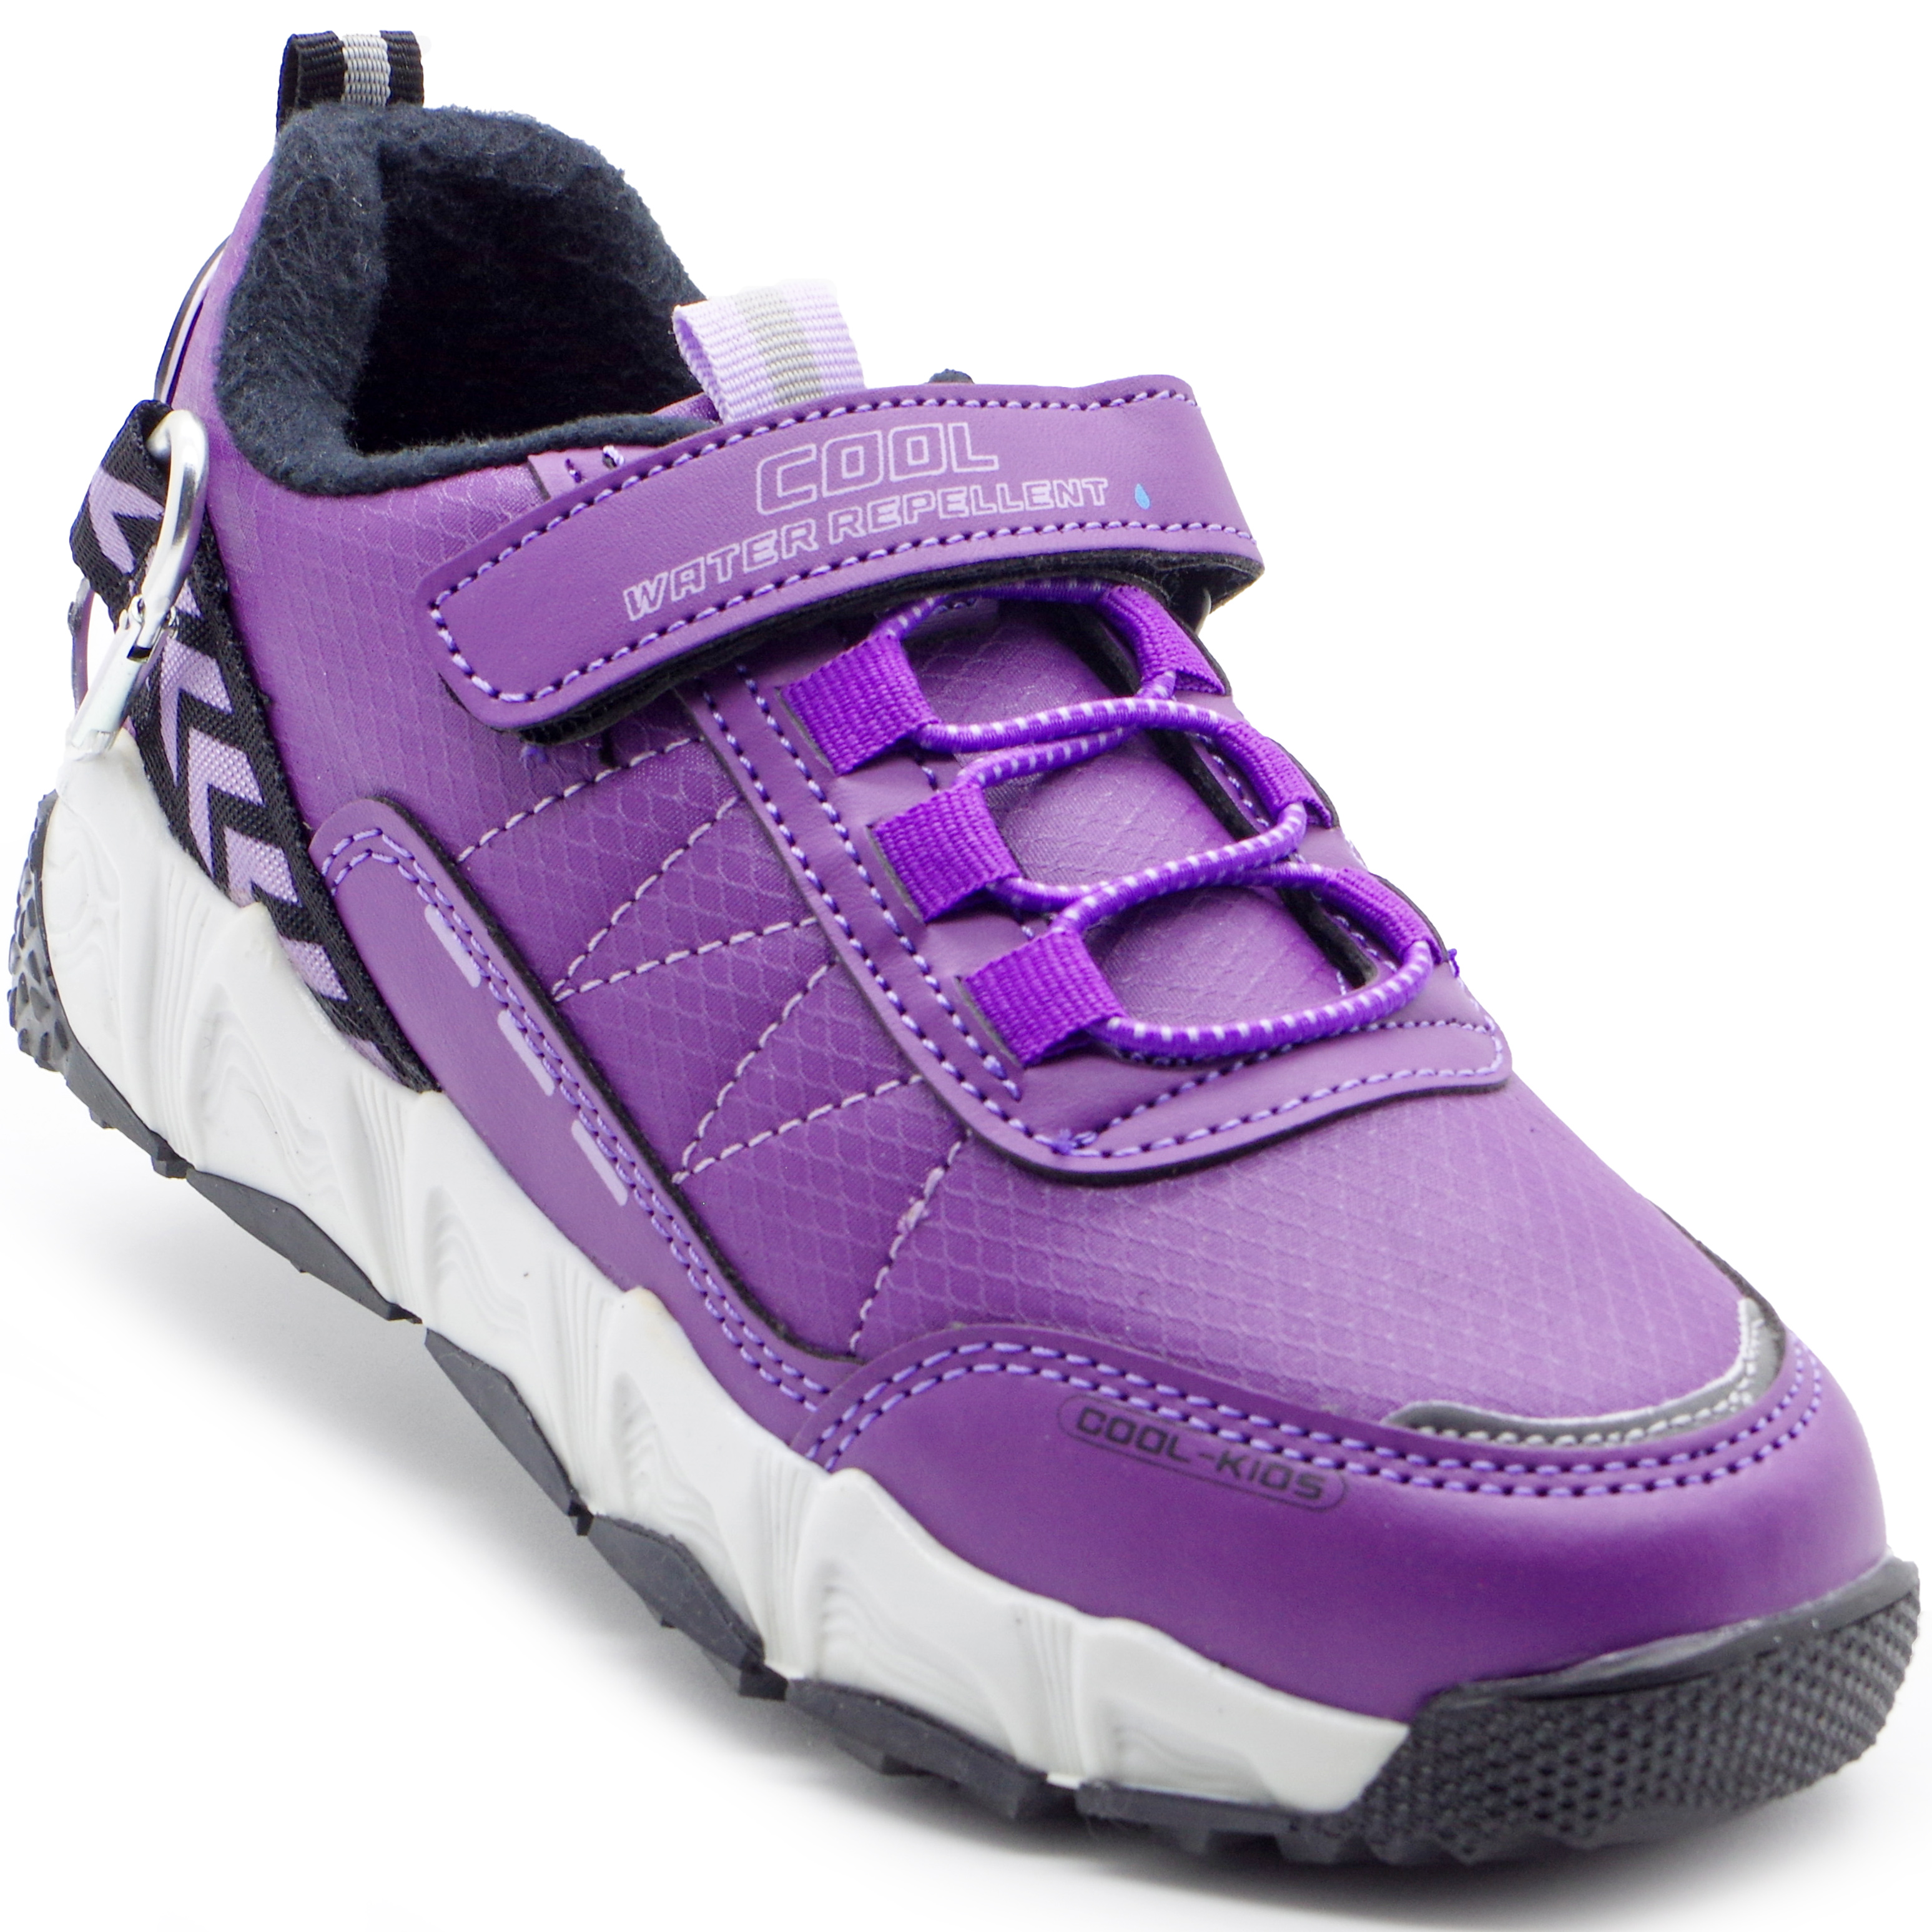 Мембранні кросівки (2260) для дівчинки, матеріал Мембрана, Фіолетовий колір, 32-36 розміри – Sole Kids